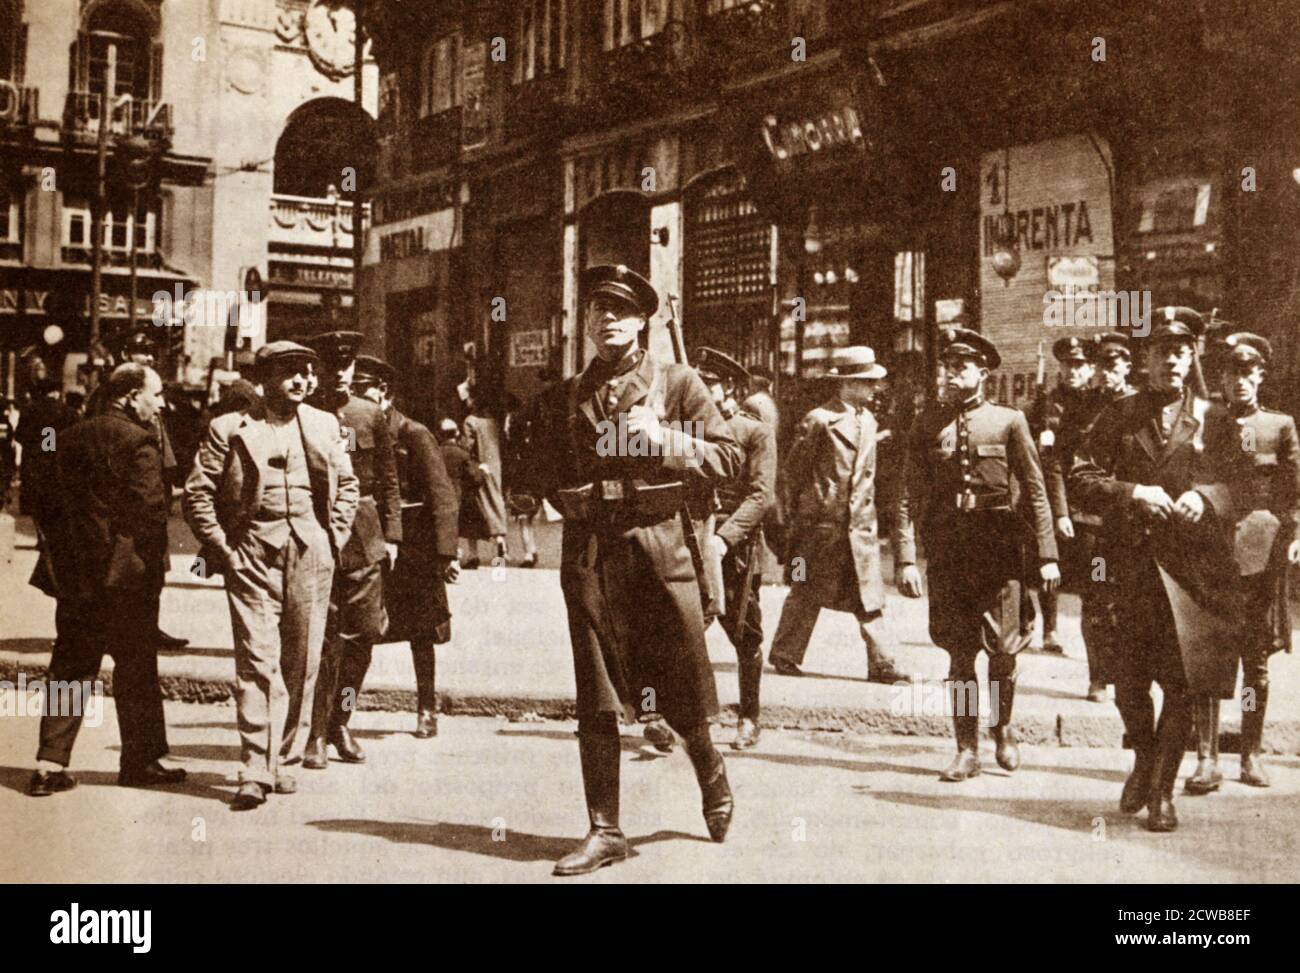 Polizia pattugliando le strade di Madrid durante lo Sciopero generale del 1934. La Rivoluzione del 1934, conosciuta anche come la Rivoluzione dell'Ottobre 1934 o lo Sciopero Generale rivoluzionario del 1934, fu un movimento di sciopero rivoluzionario che ebbe luogo tra il 5 e il 19 ottobre 1934, durante il biennio nero della seconda Repubblica Spagnola. Gli scioperi sono stati innescati dall'ingresso della Confederazione conservatrice spagnola della destra autonoma (CEDA) nel governo spagnolo. La maggior parte degli eventi si è verificata in Catalogna e nelle Asturie e sono stati sostenuti da molti socialisti spagnoli del Partito dei lavoratori (PSOE) e dalla GENA Foto Stock